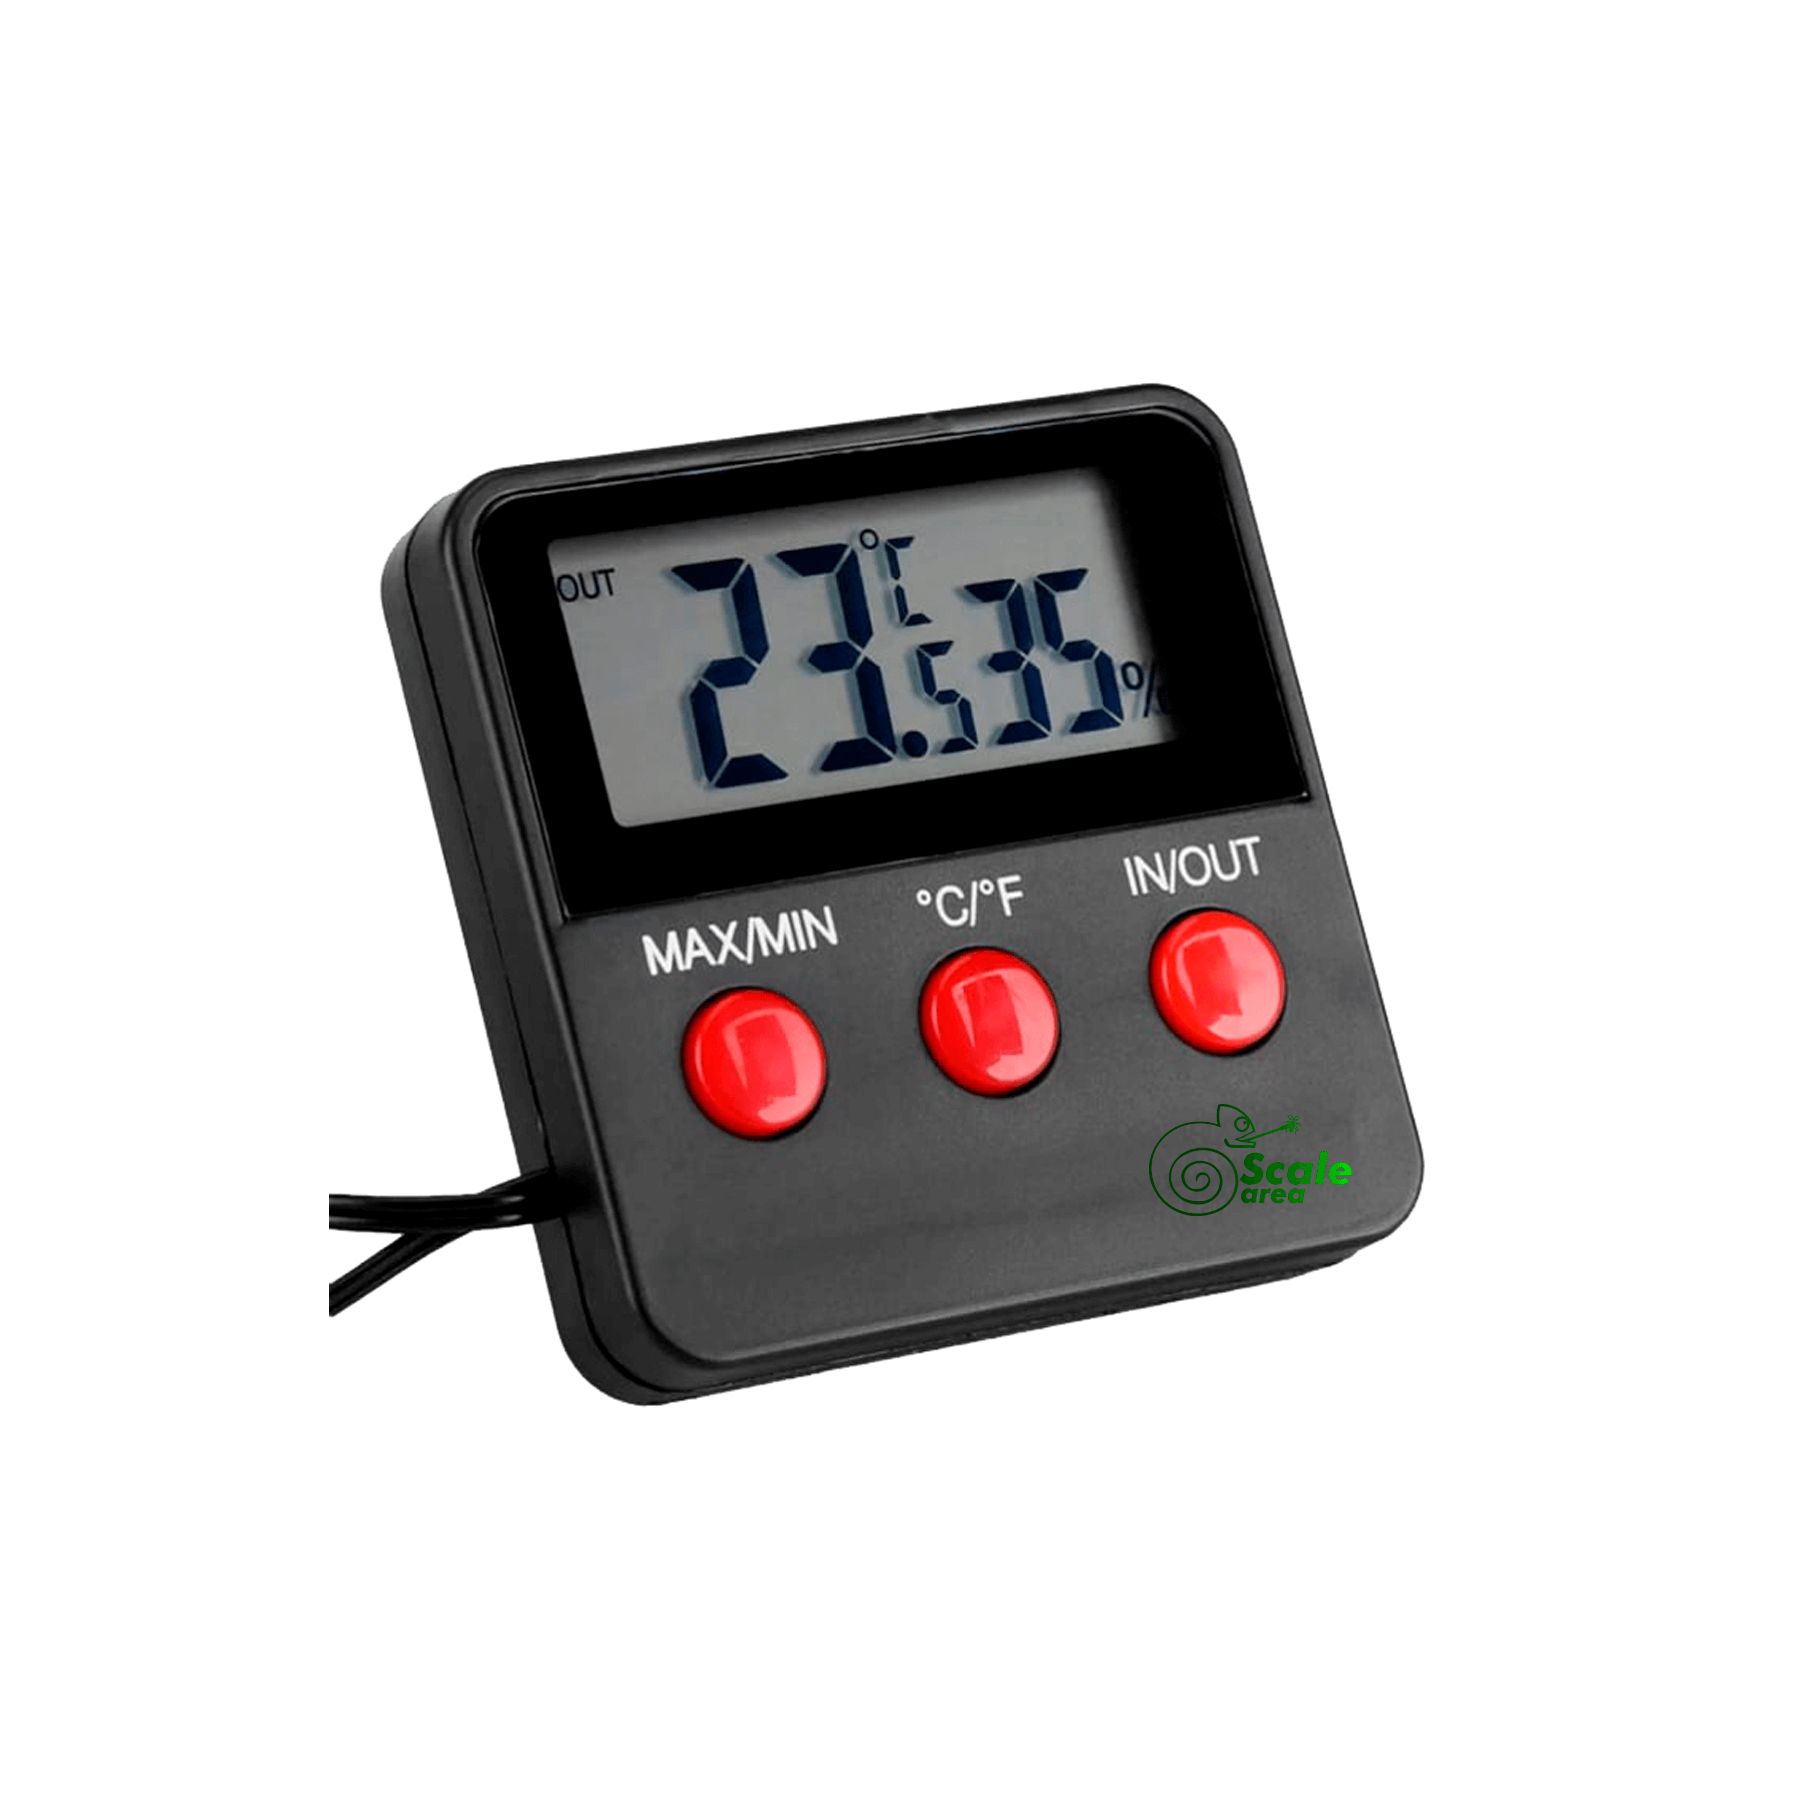 Thermomètre-hygromètre numérique avec sonde